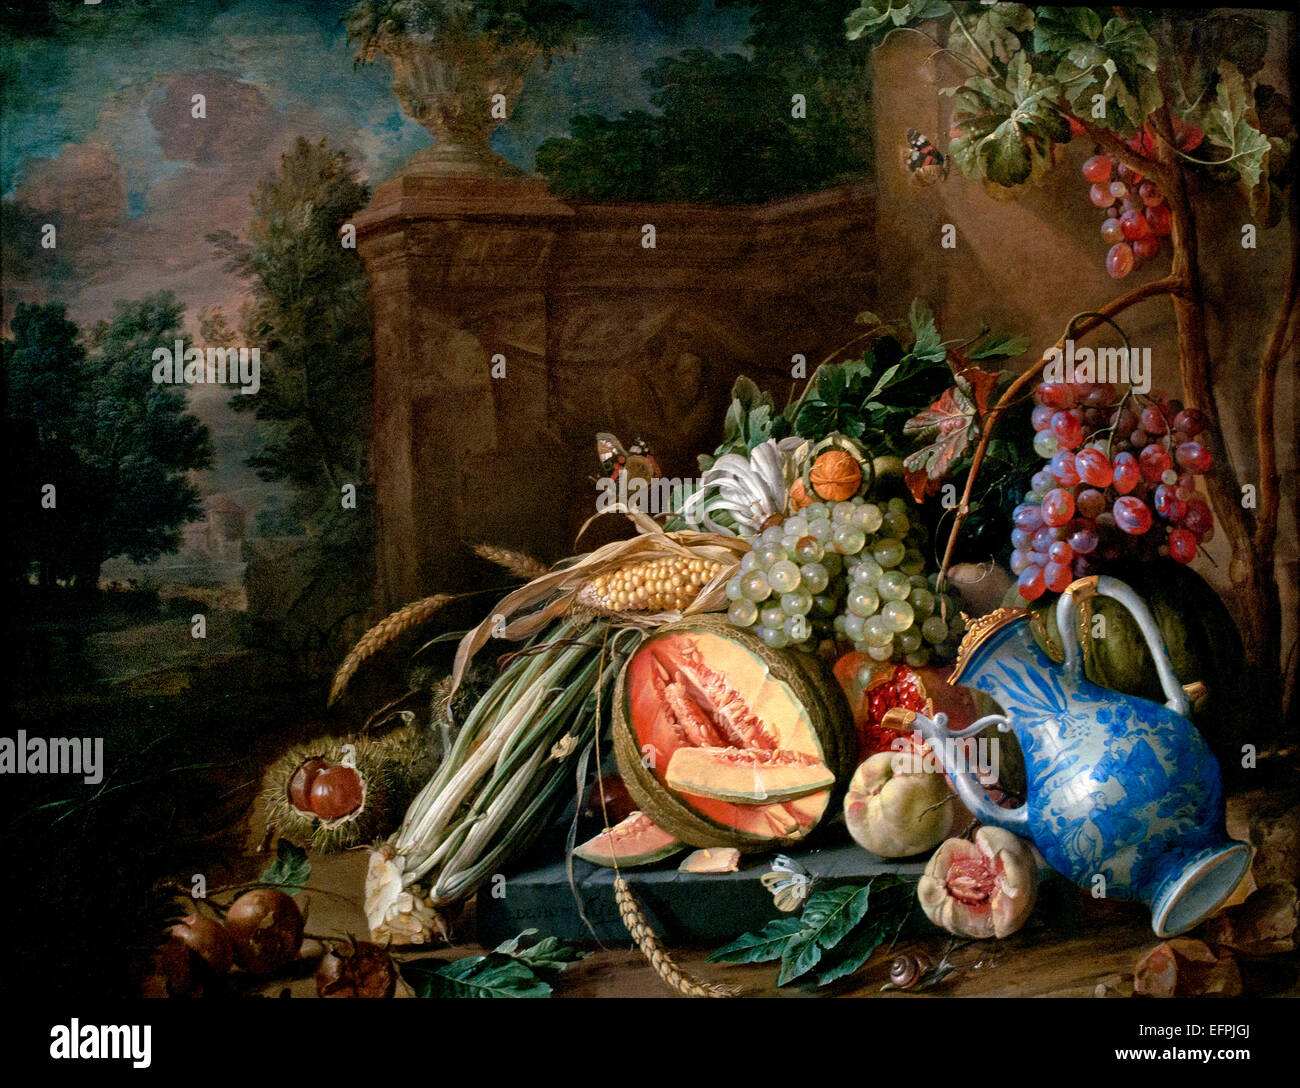 Still Life with Vegetables and Fruit before A Garden Balustrade 1658 Jan Davidsz. de Heem  1606 - 1684  Dutch Netherlands Stock Photo